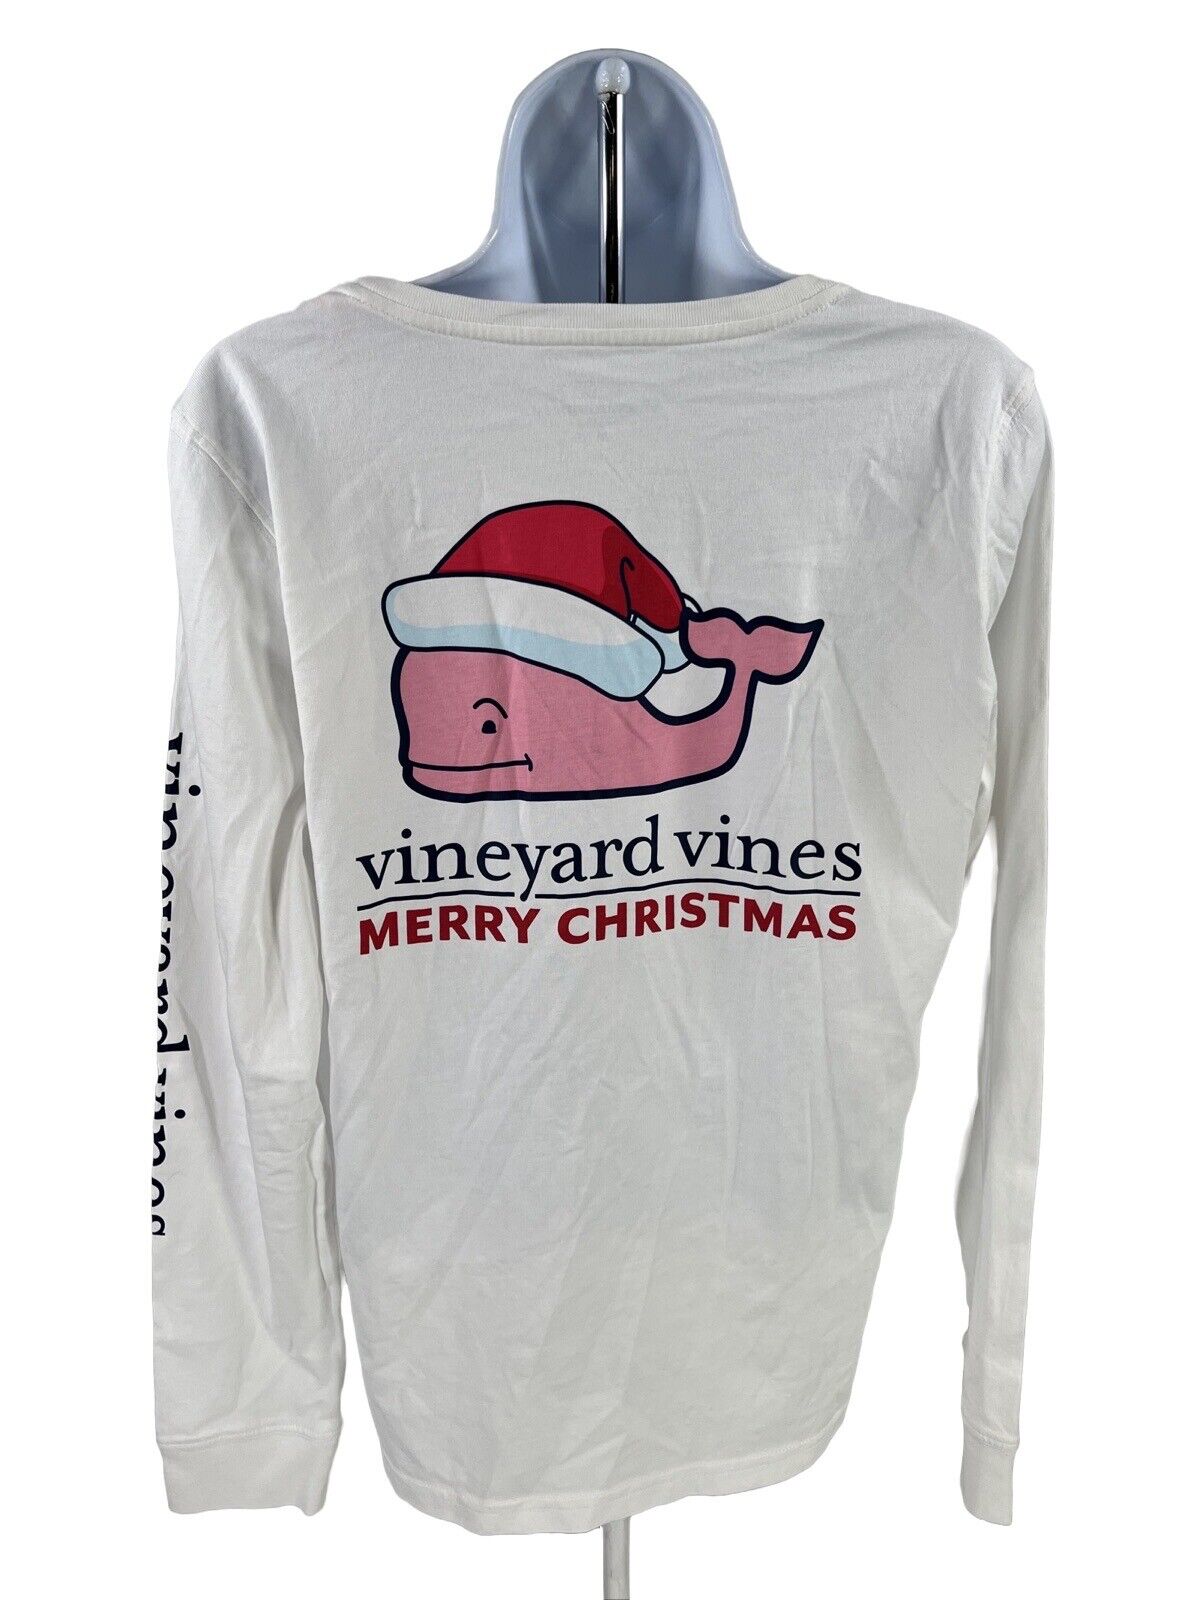 NUEVA camiseta navideña blanca con ballena Santa de Vineyard Vines para mujer - M